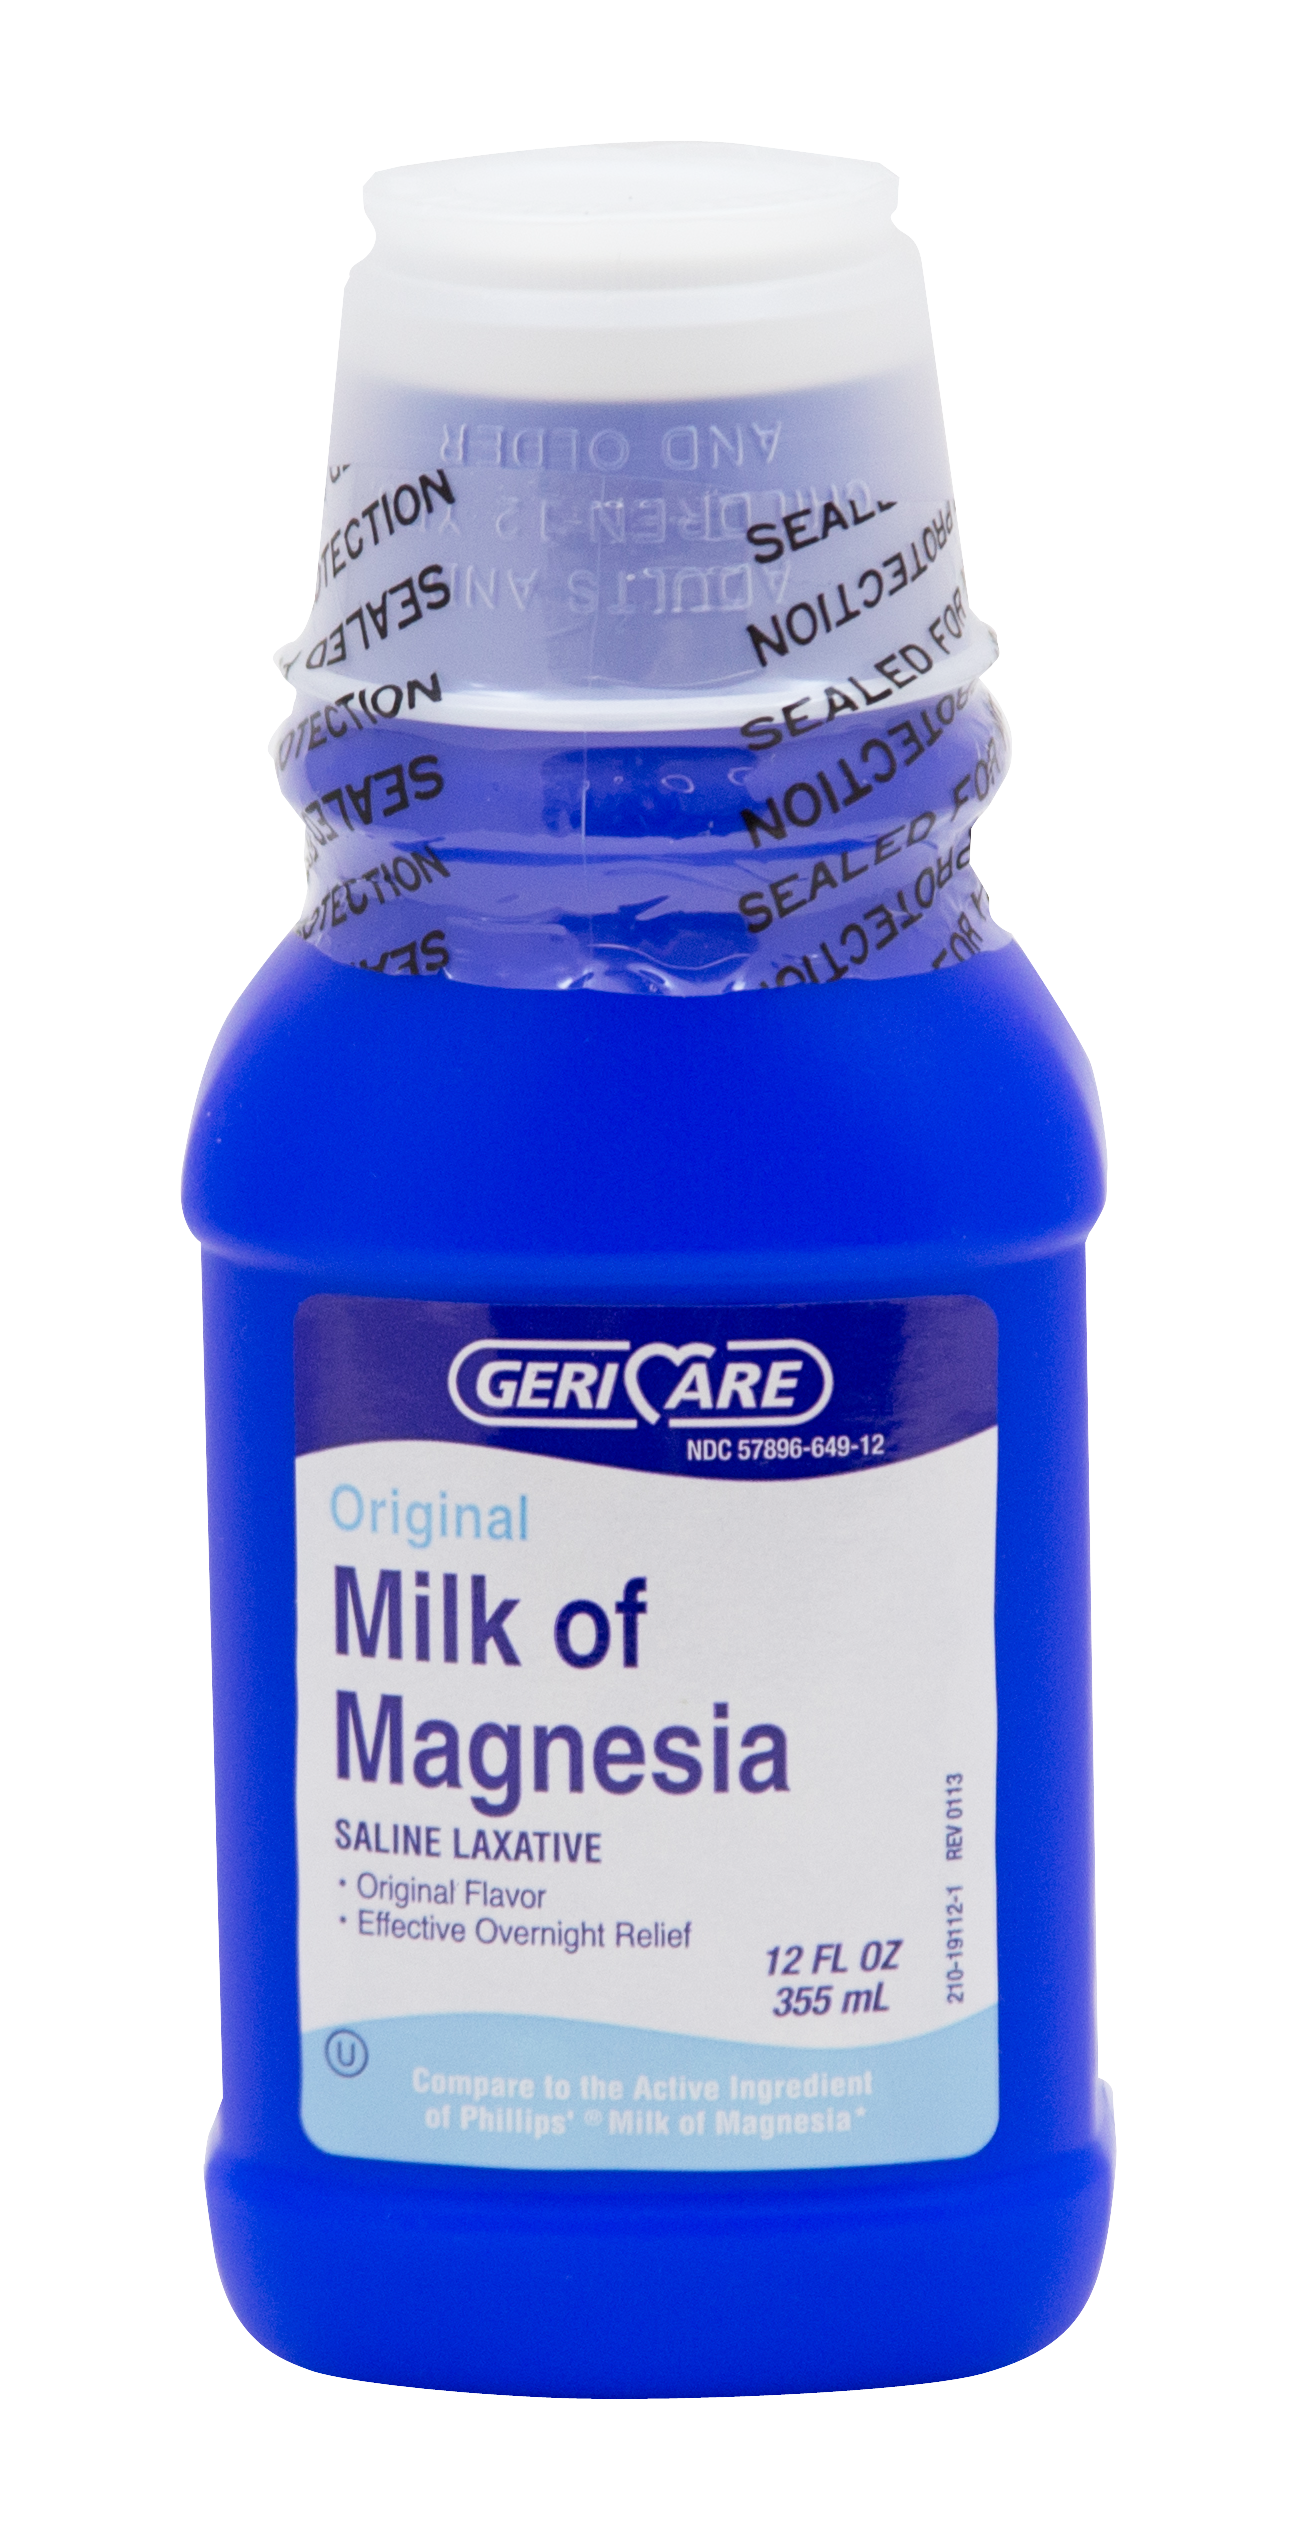 Milk of Magnesia – 12 FL OZ